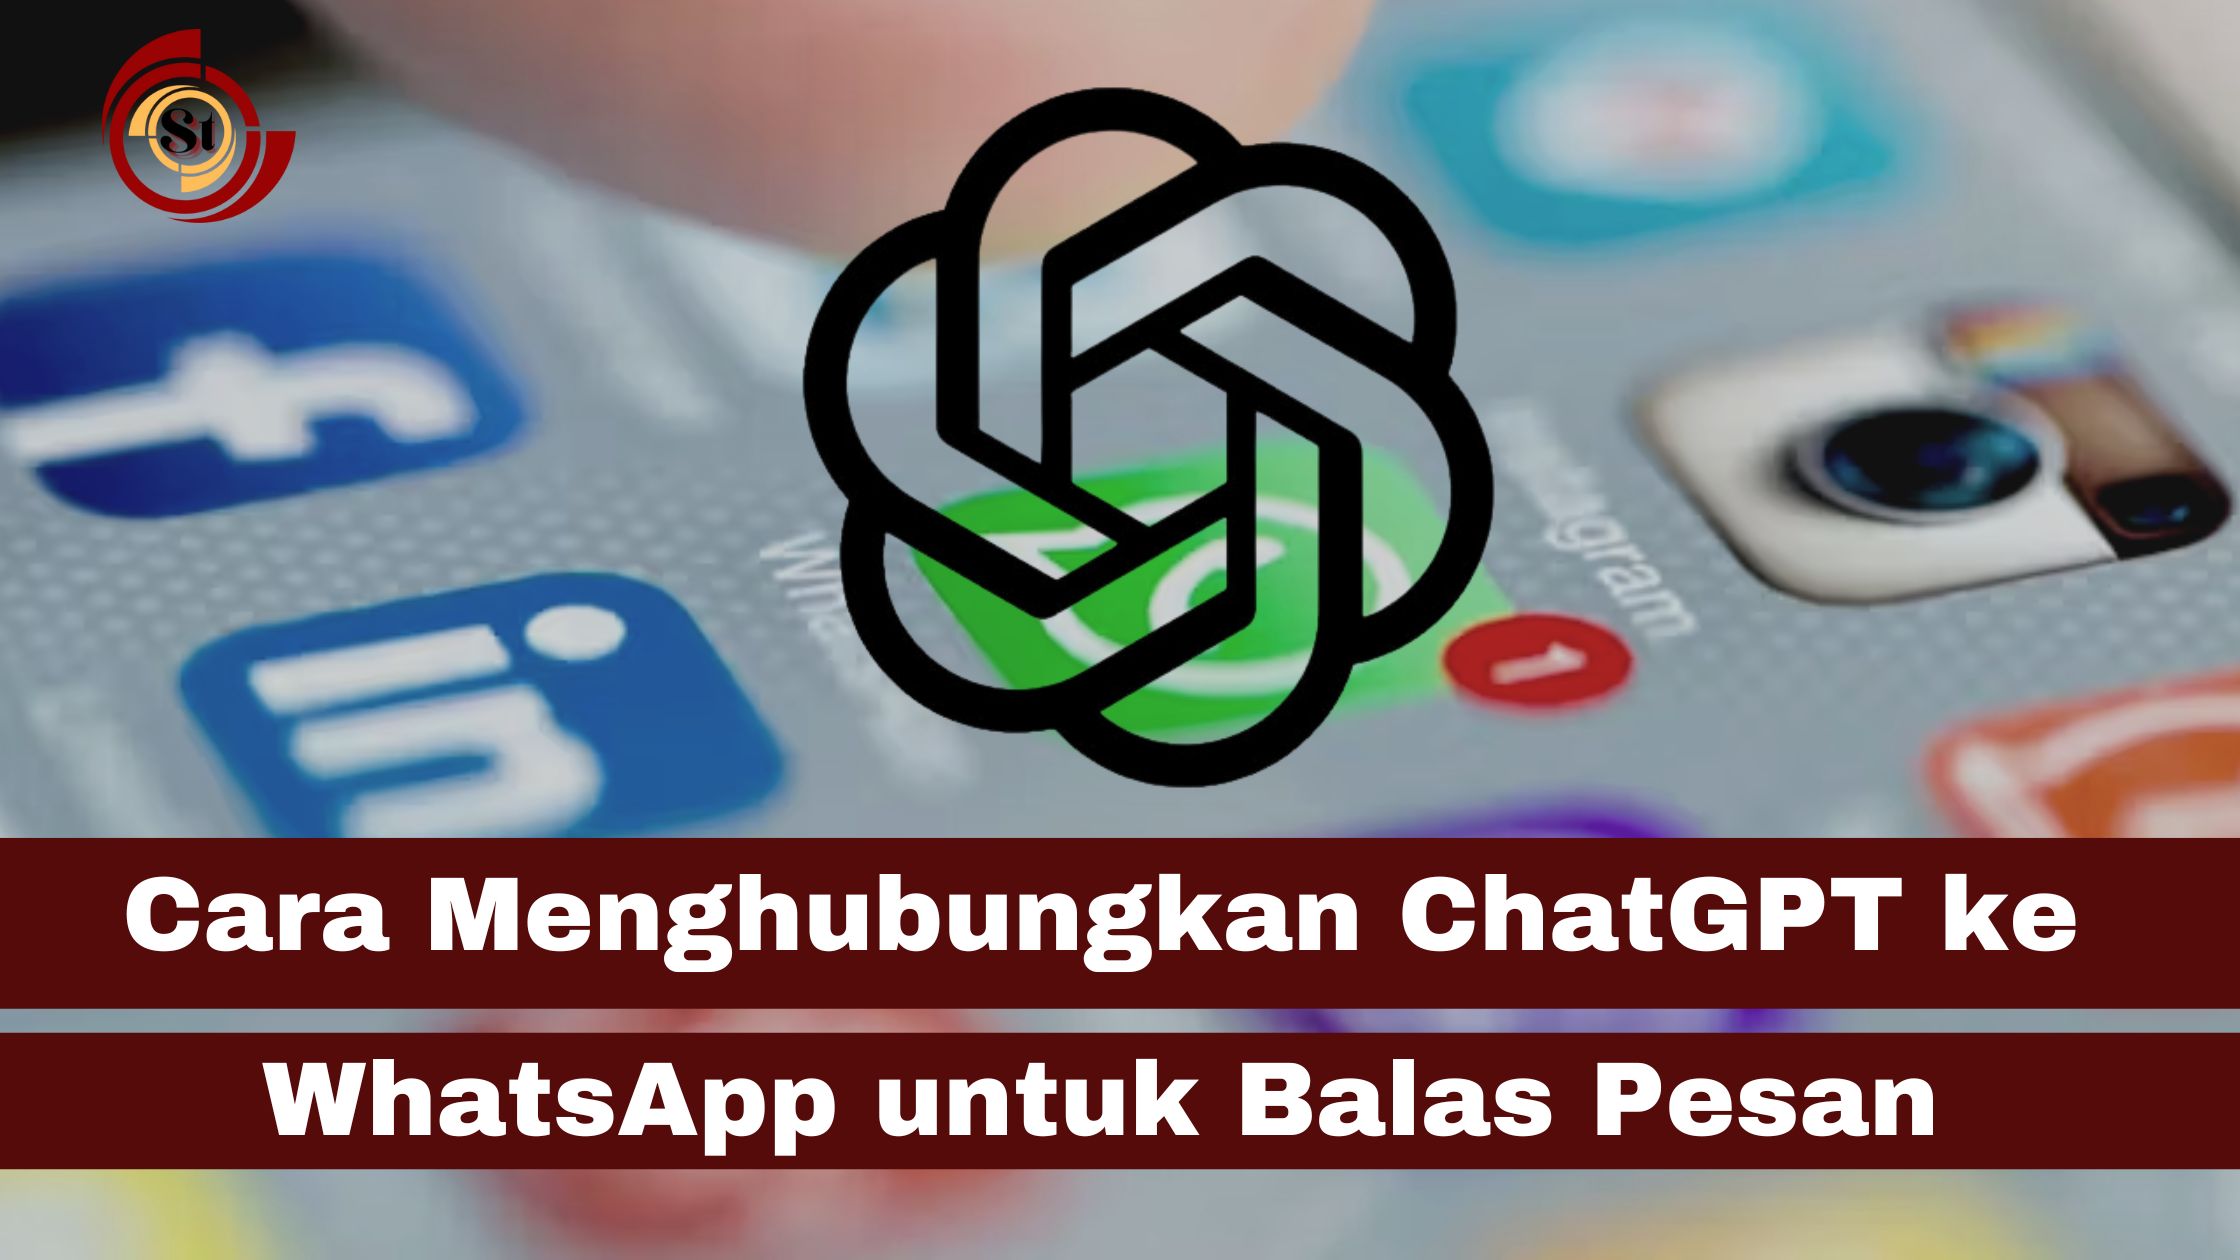 Cara Menghubungkan ChatGPT ke WhatsApp